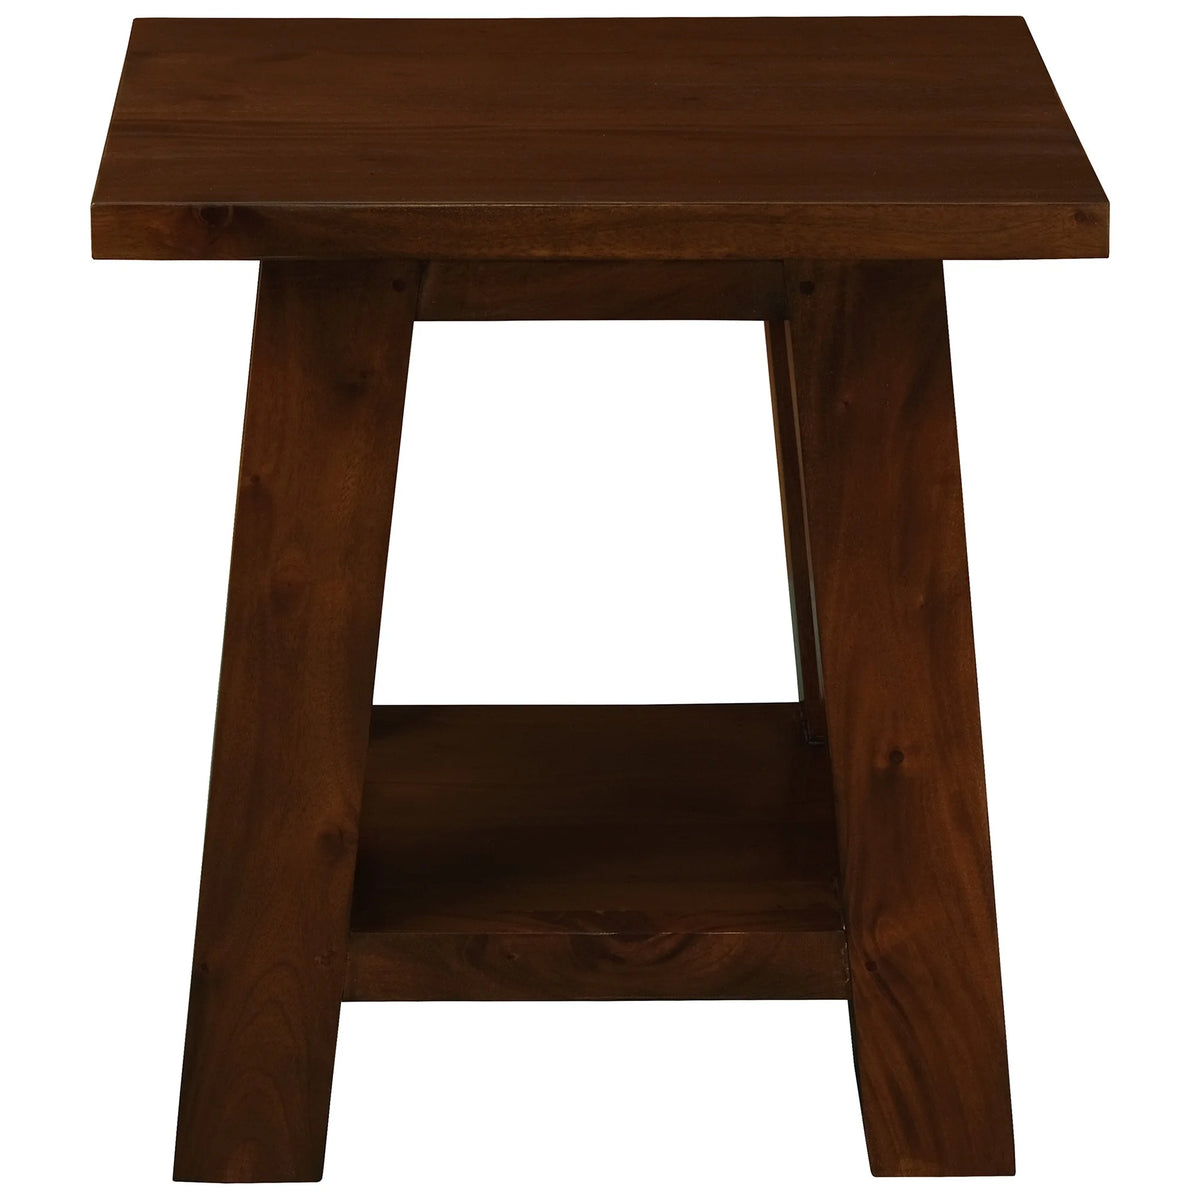 Zimra Solid Timber Lamp Table - Mahogany - Notbrand